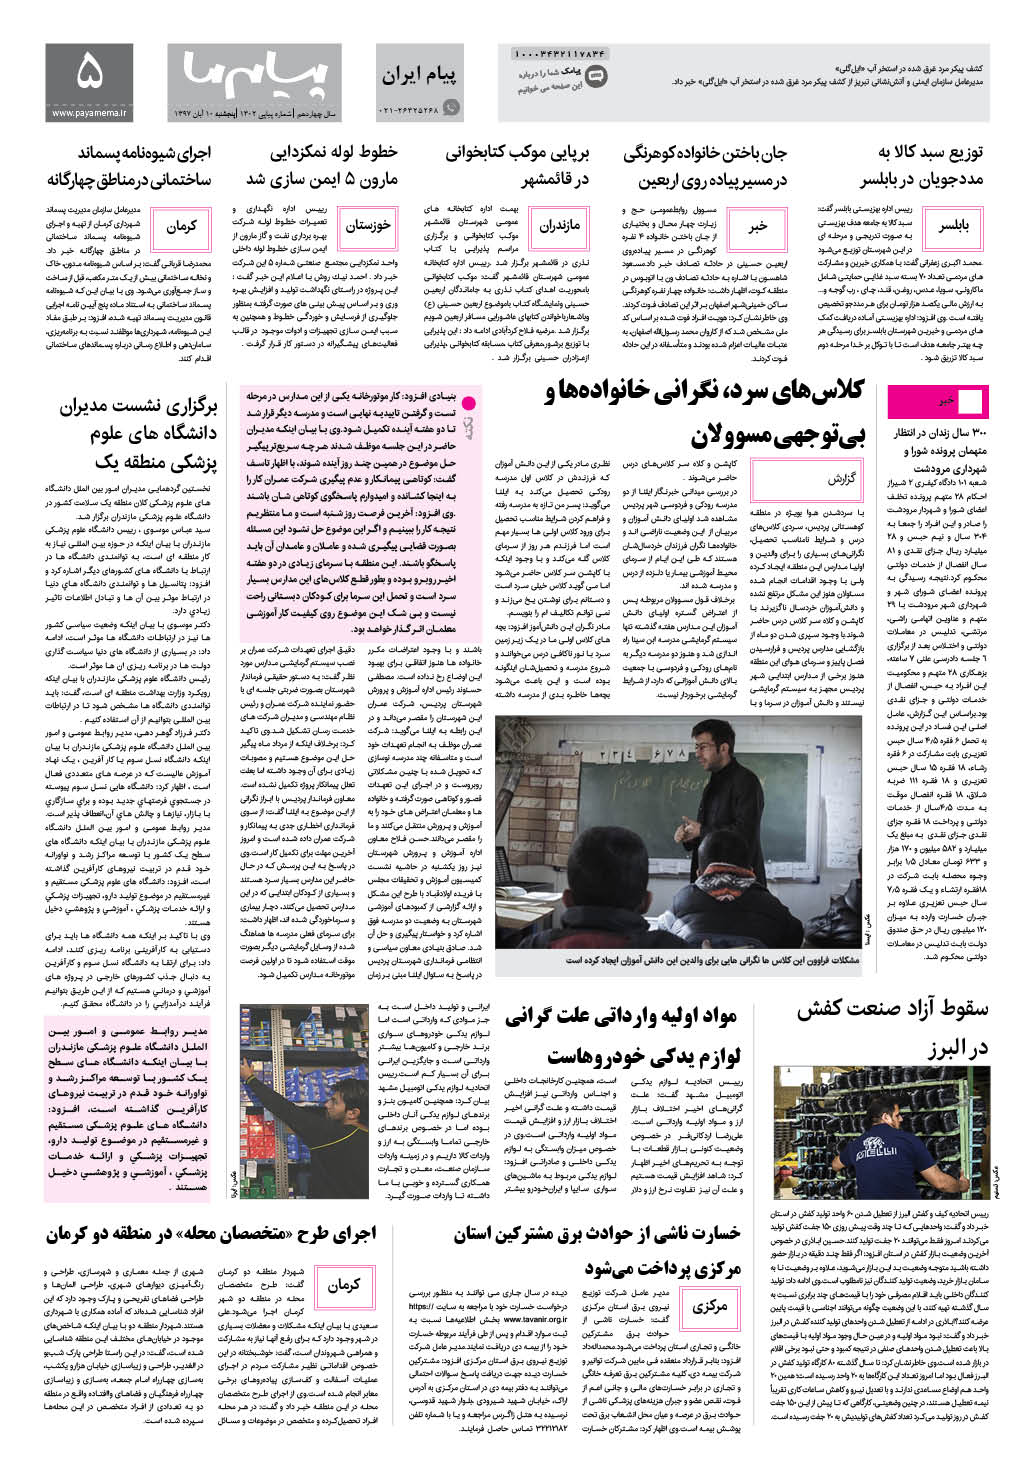 صفحه پیام ایران شماره 1302 روزنامه پیام ما